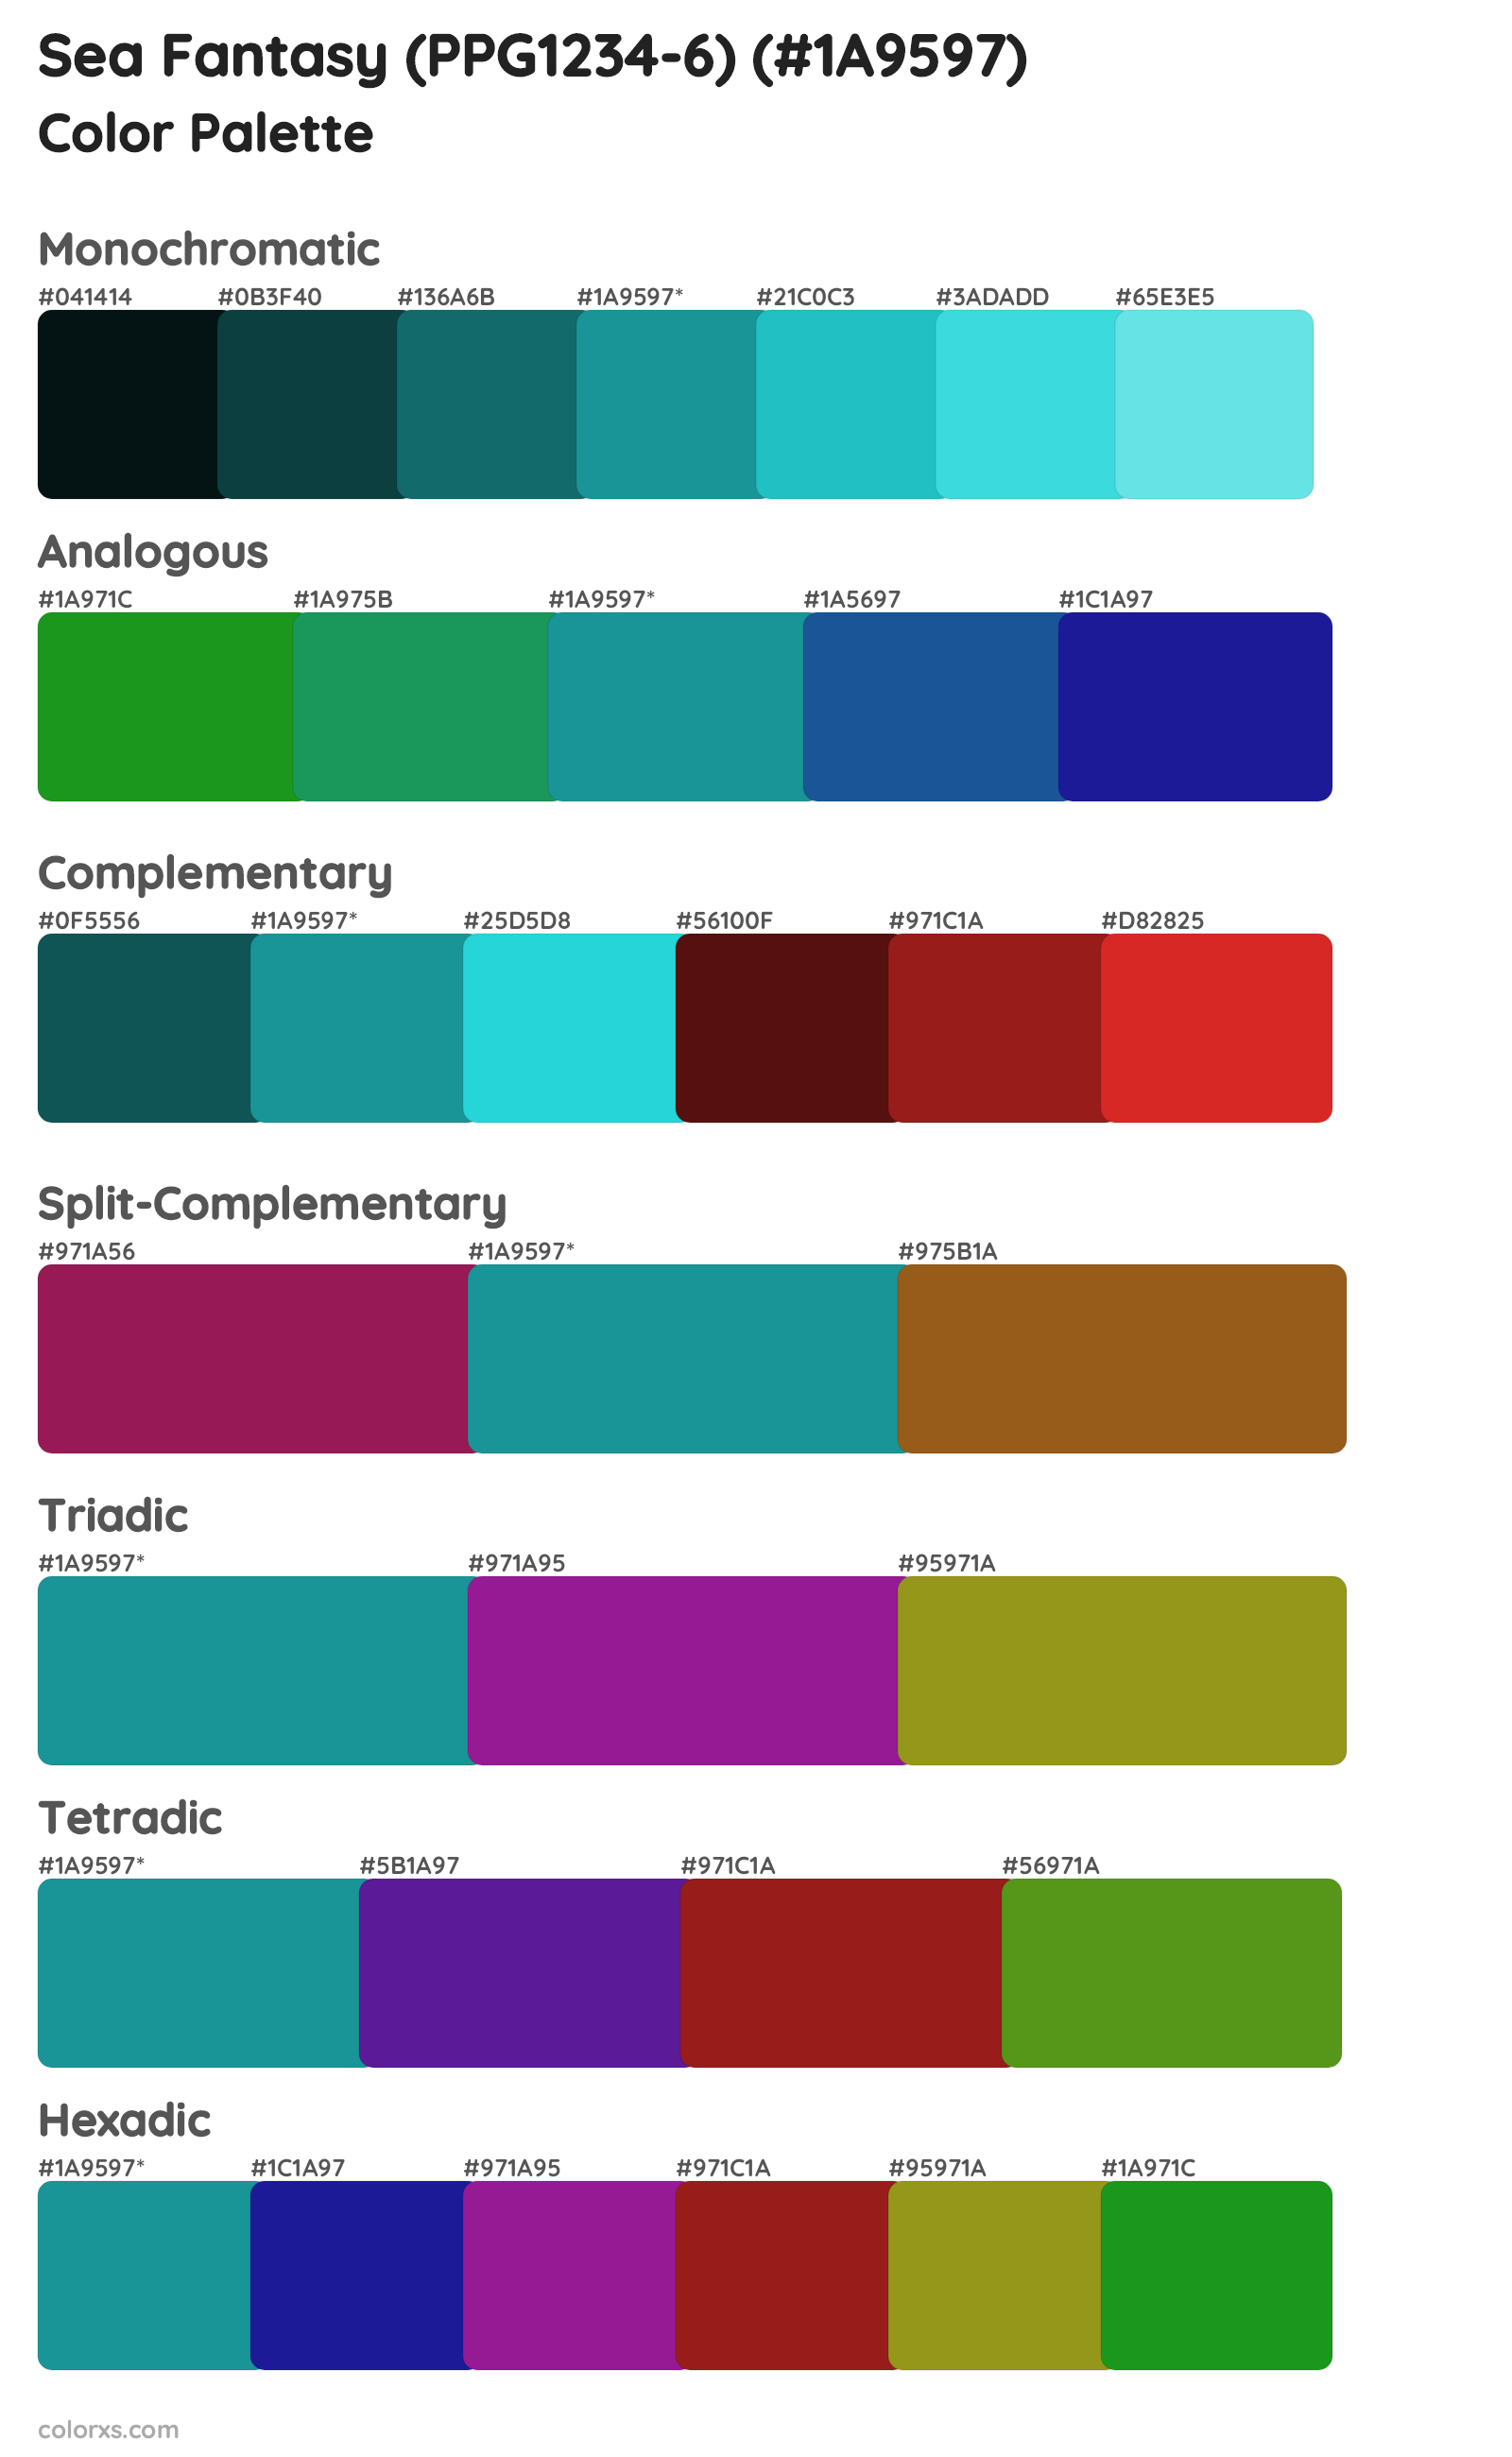 Sea Fantasy (PPG1234-6) Color Scheme Palettes